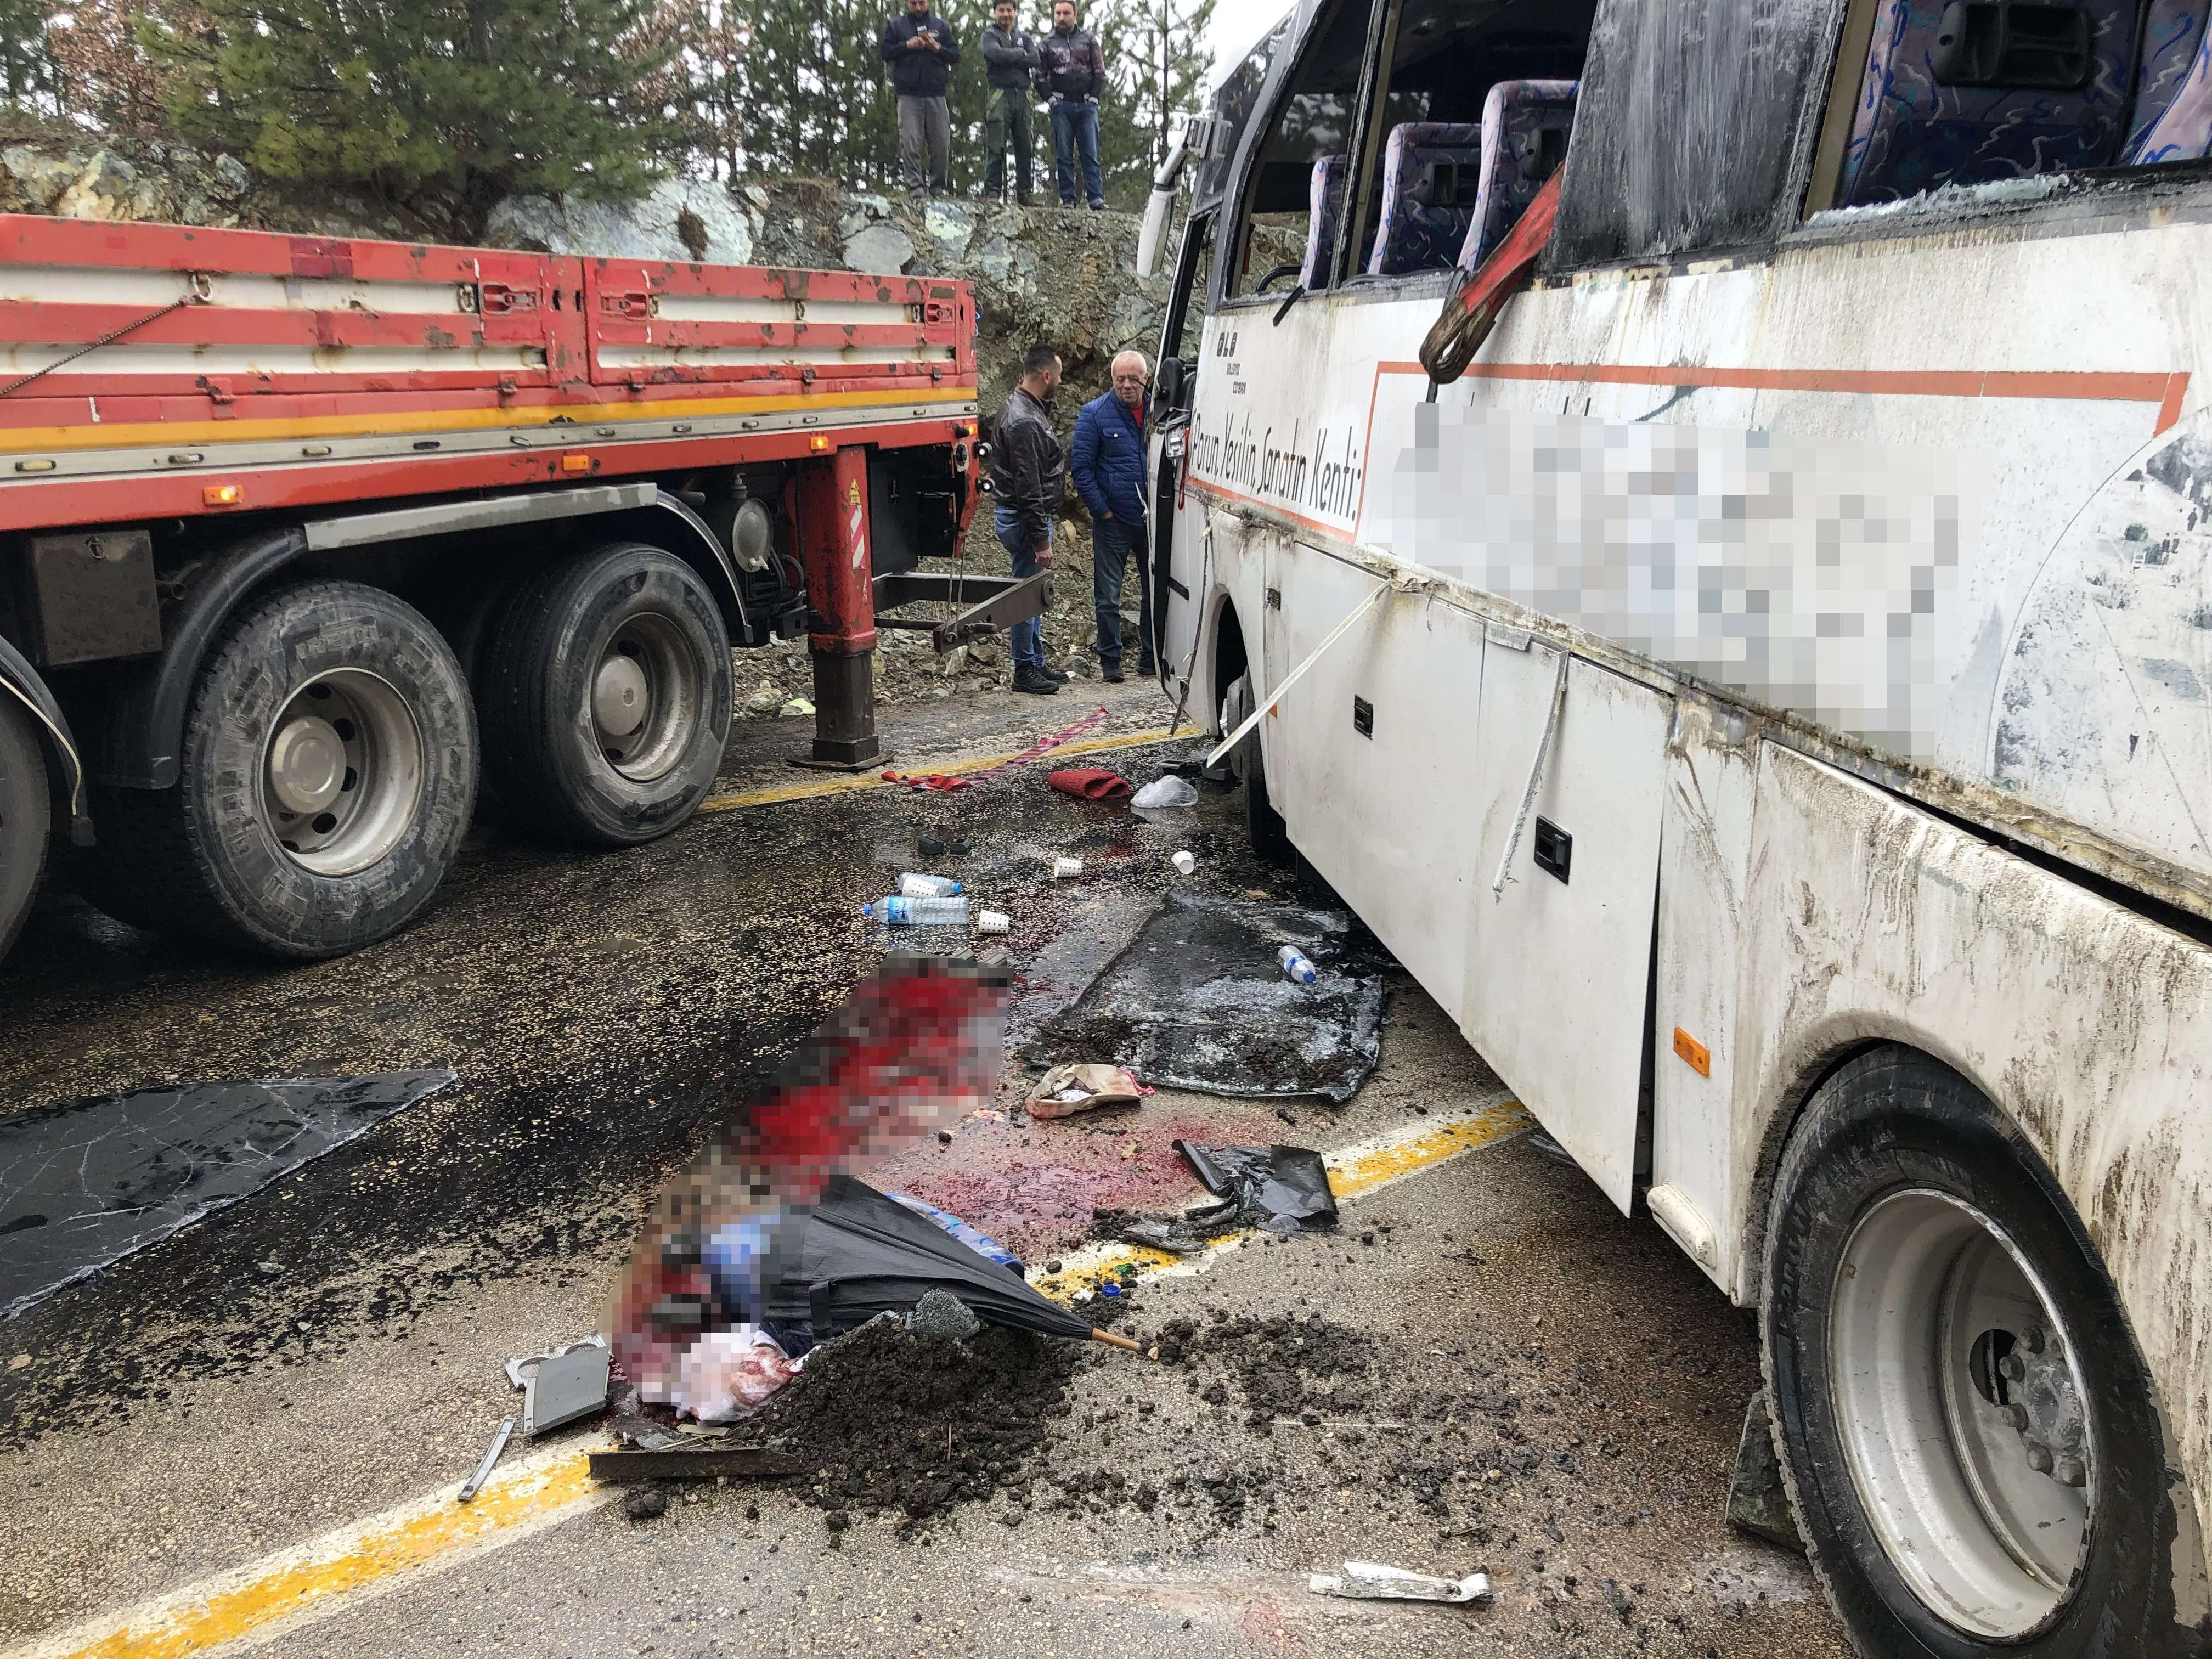 Cenazeye giden otobüs yan yattı: 35 yaralı